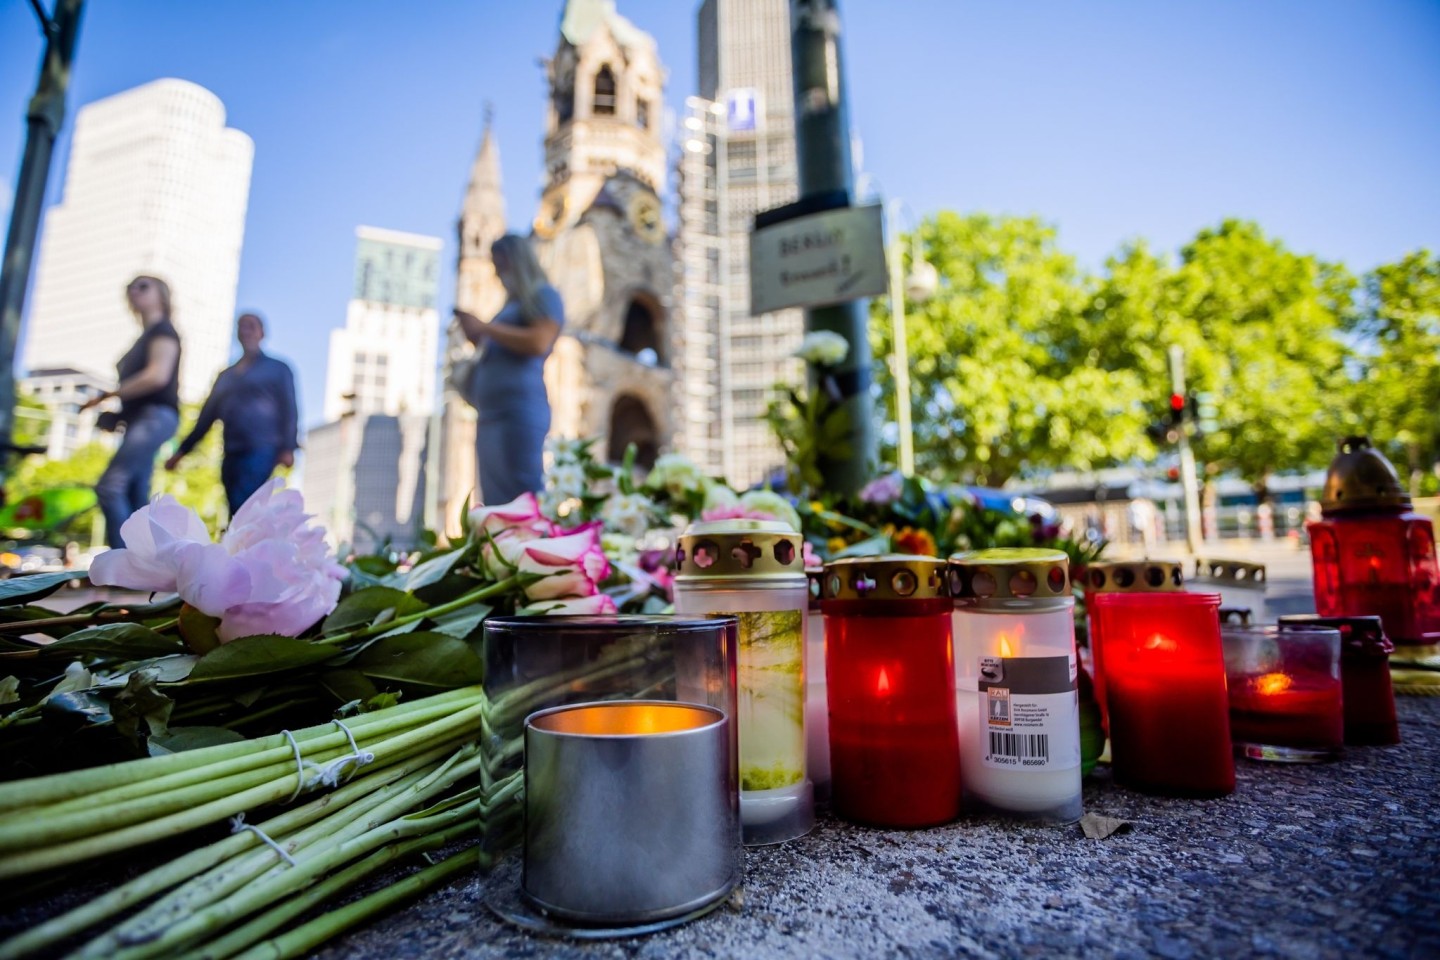 Blumen liegen zur Erinnerung an die Opfer der Todesfahrt vor der Kaiser-Wilhelm-Gedächtniskirche in Berlin-Charlottenburg.